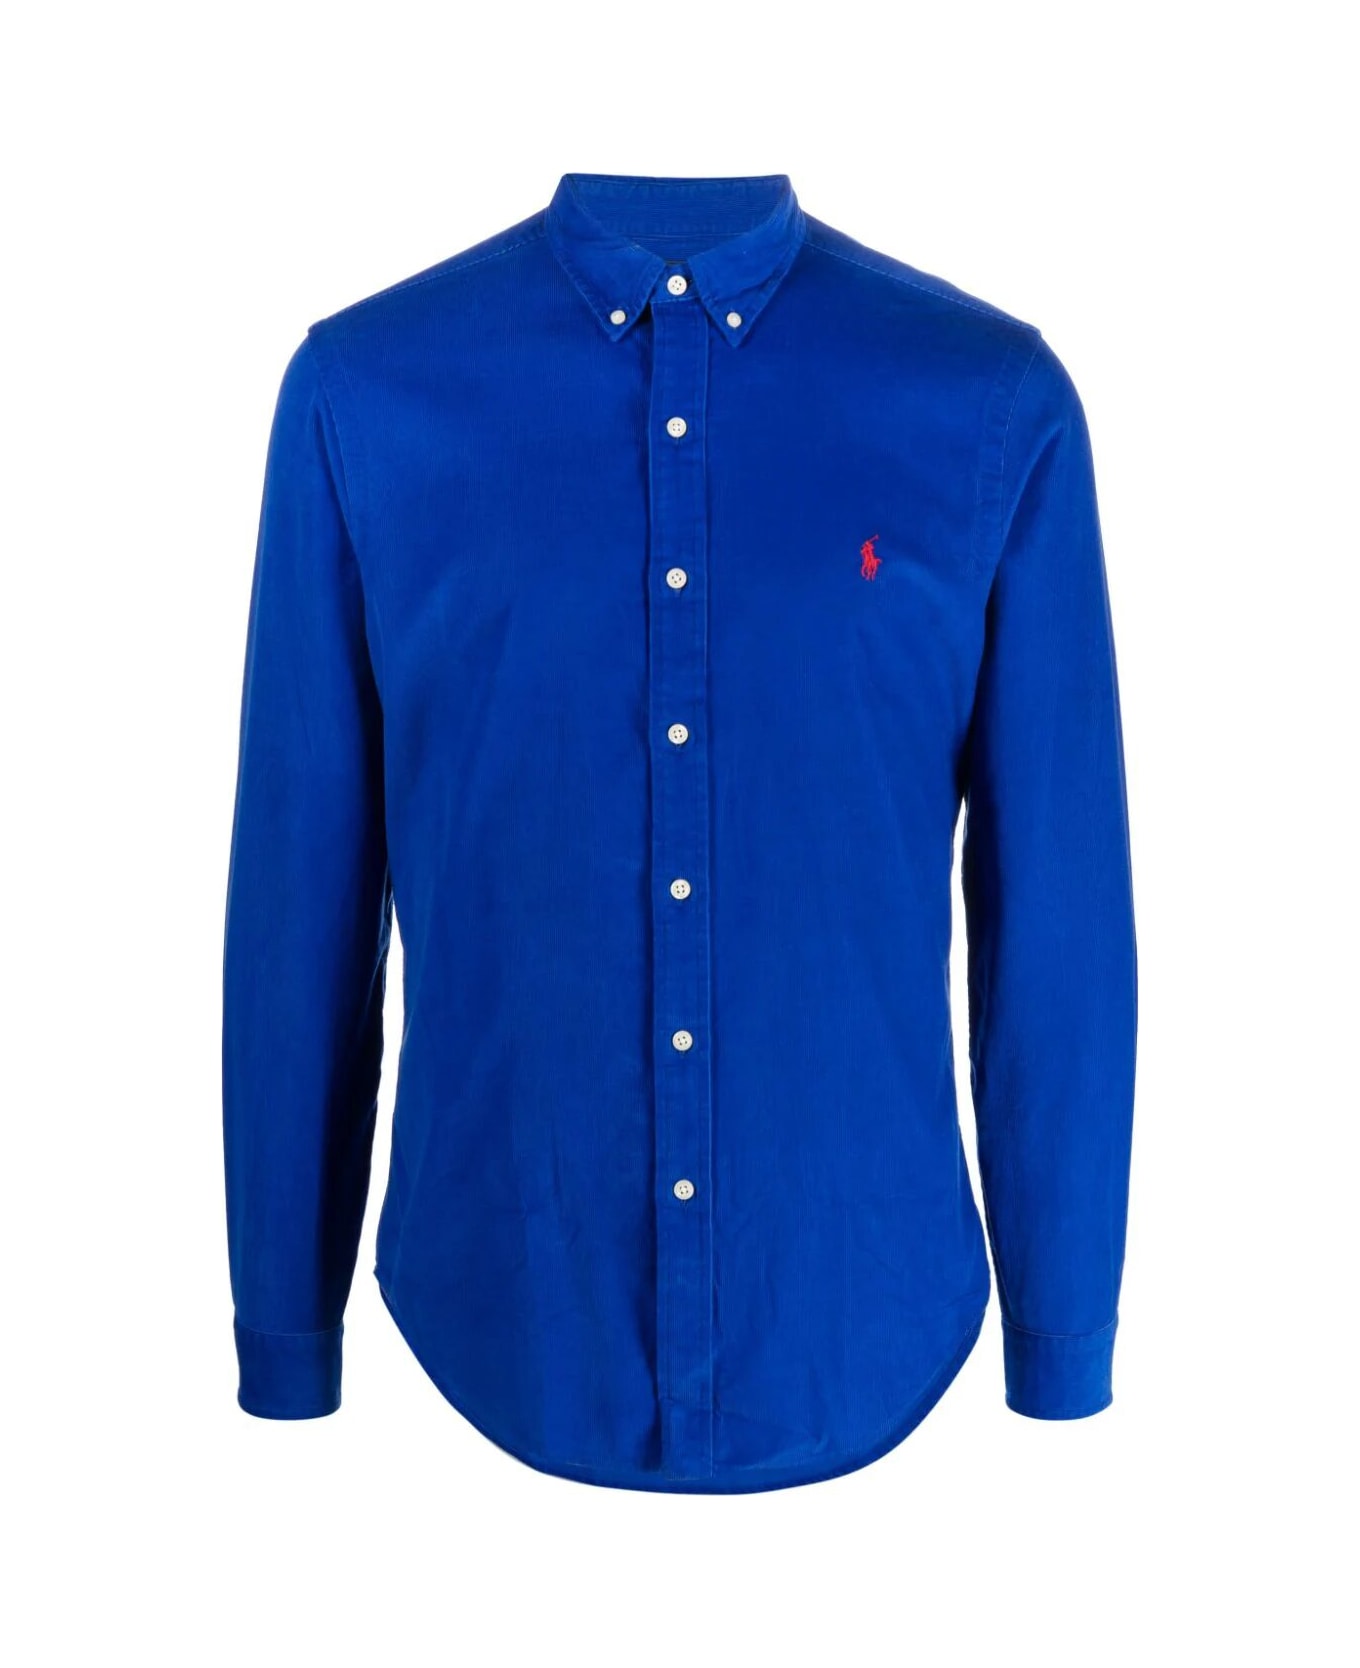 Polo Ralph Lauren Corduroy Long Sleeve Sport Shirt - New Sapphire シャツ